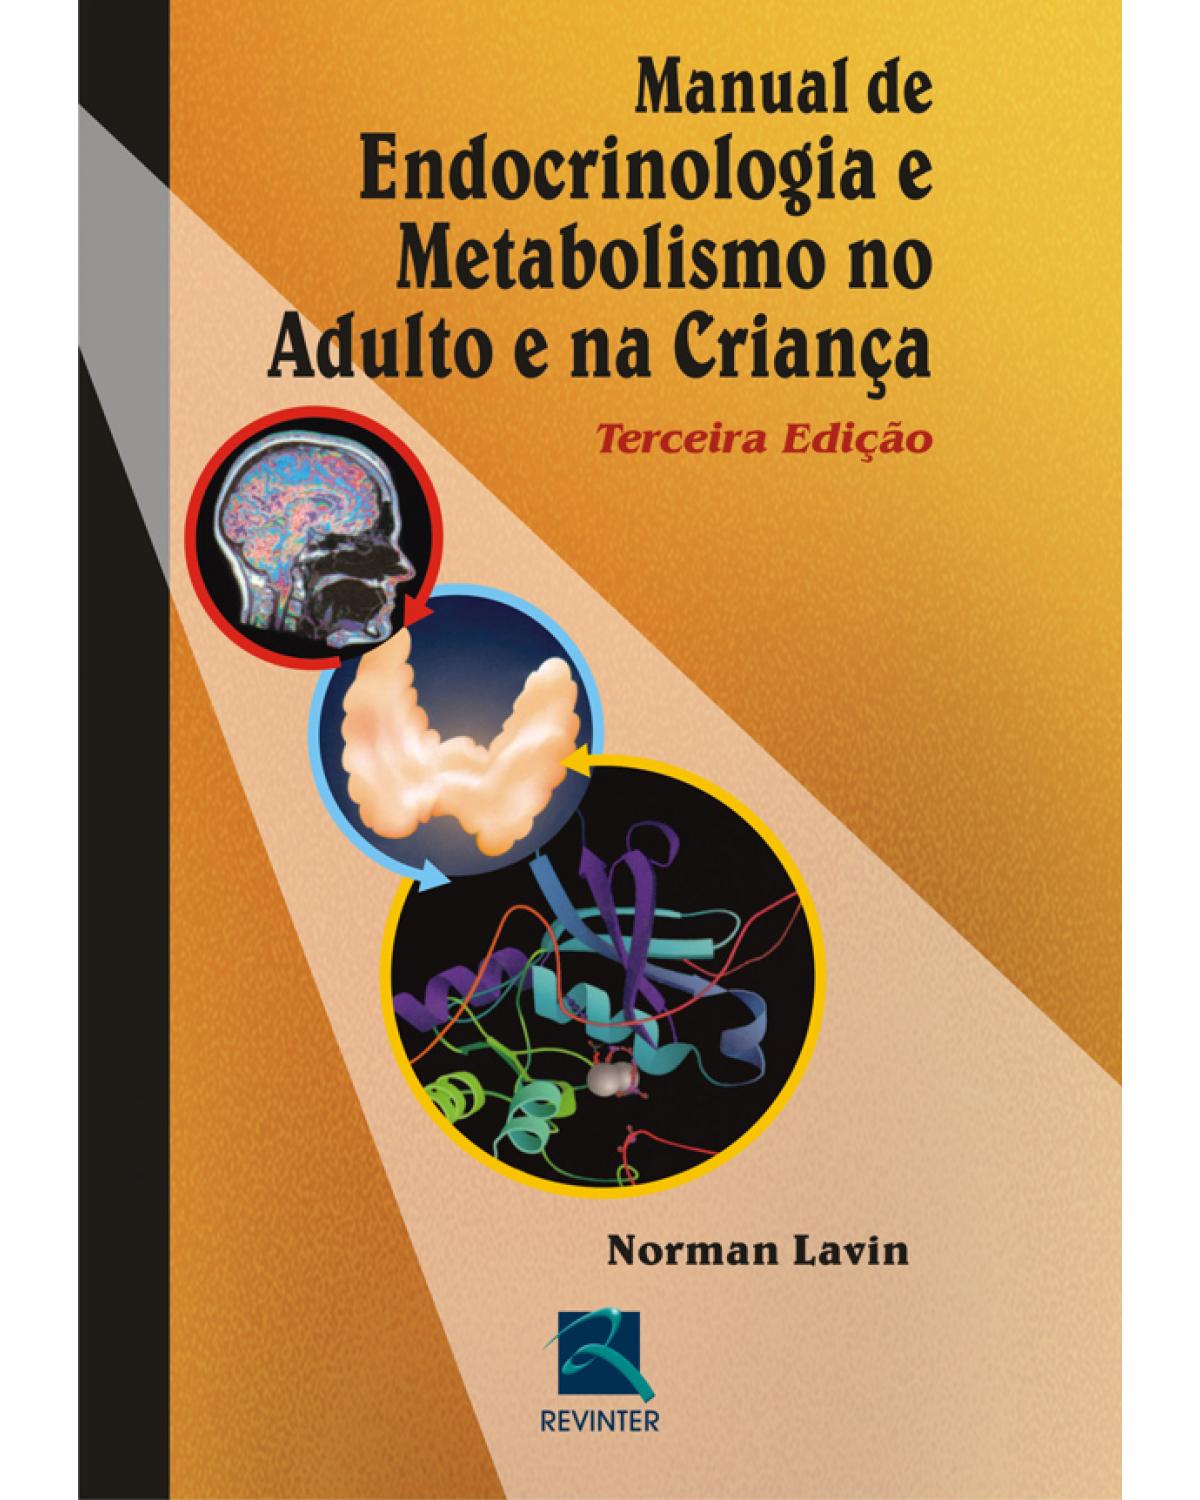 Manual de endocrinologia e metabolismo no adulto e na criança - 3ª Edição